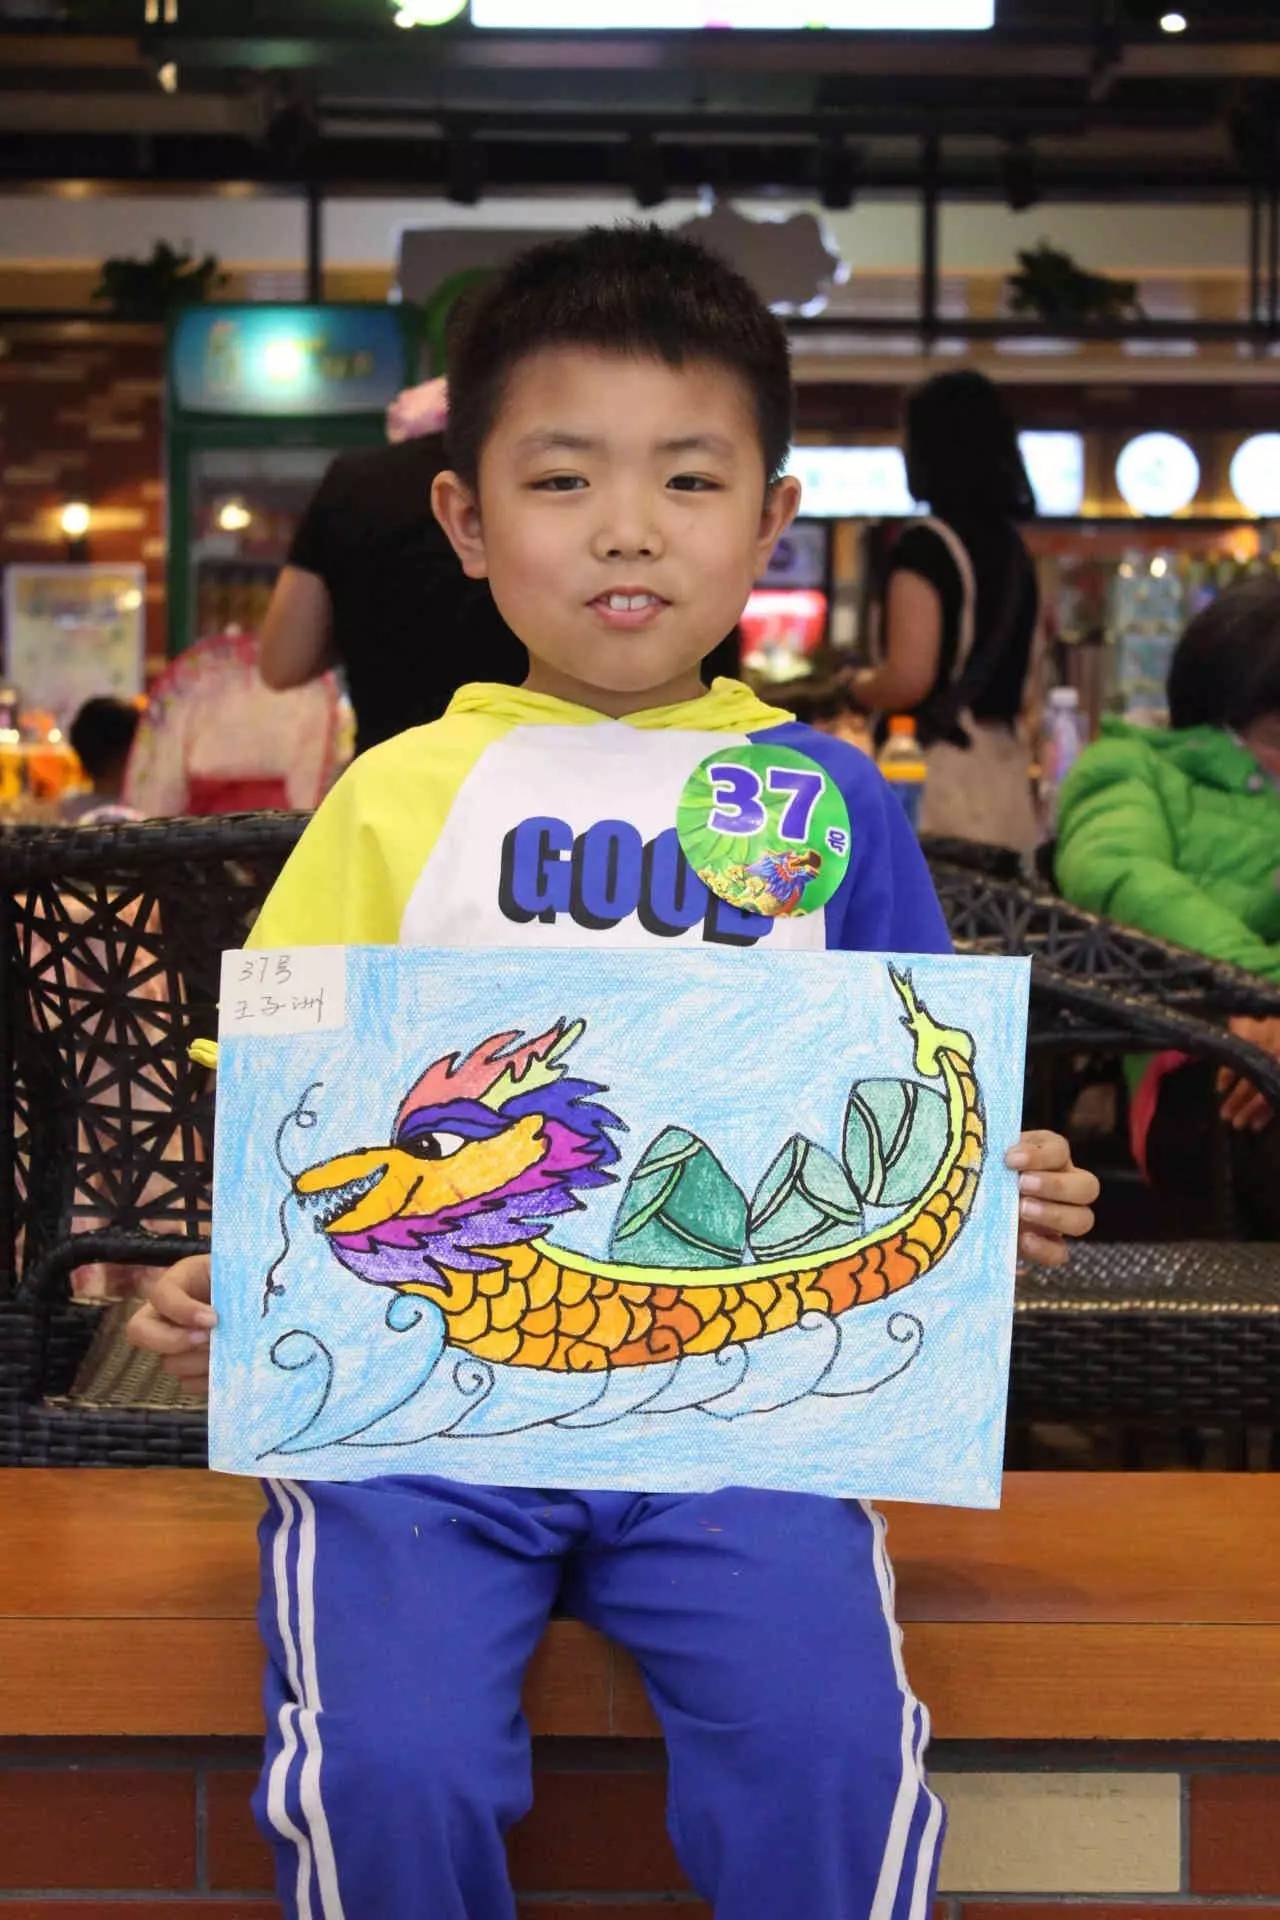 【投票链接26号-46号】西亚儿童"赛龙舟"绘画大赛投票